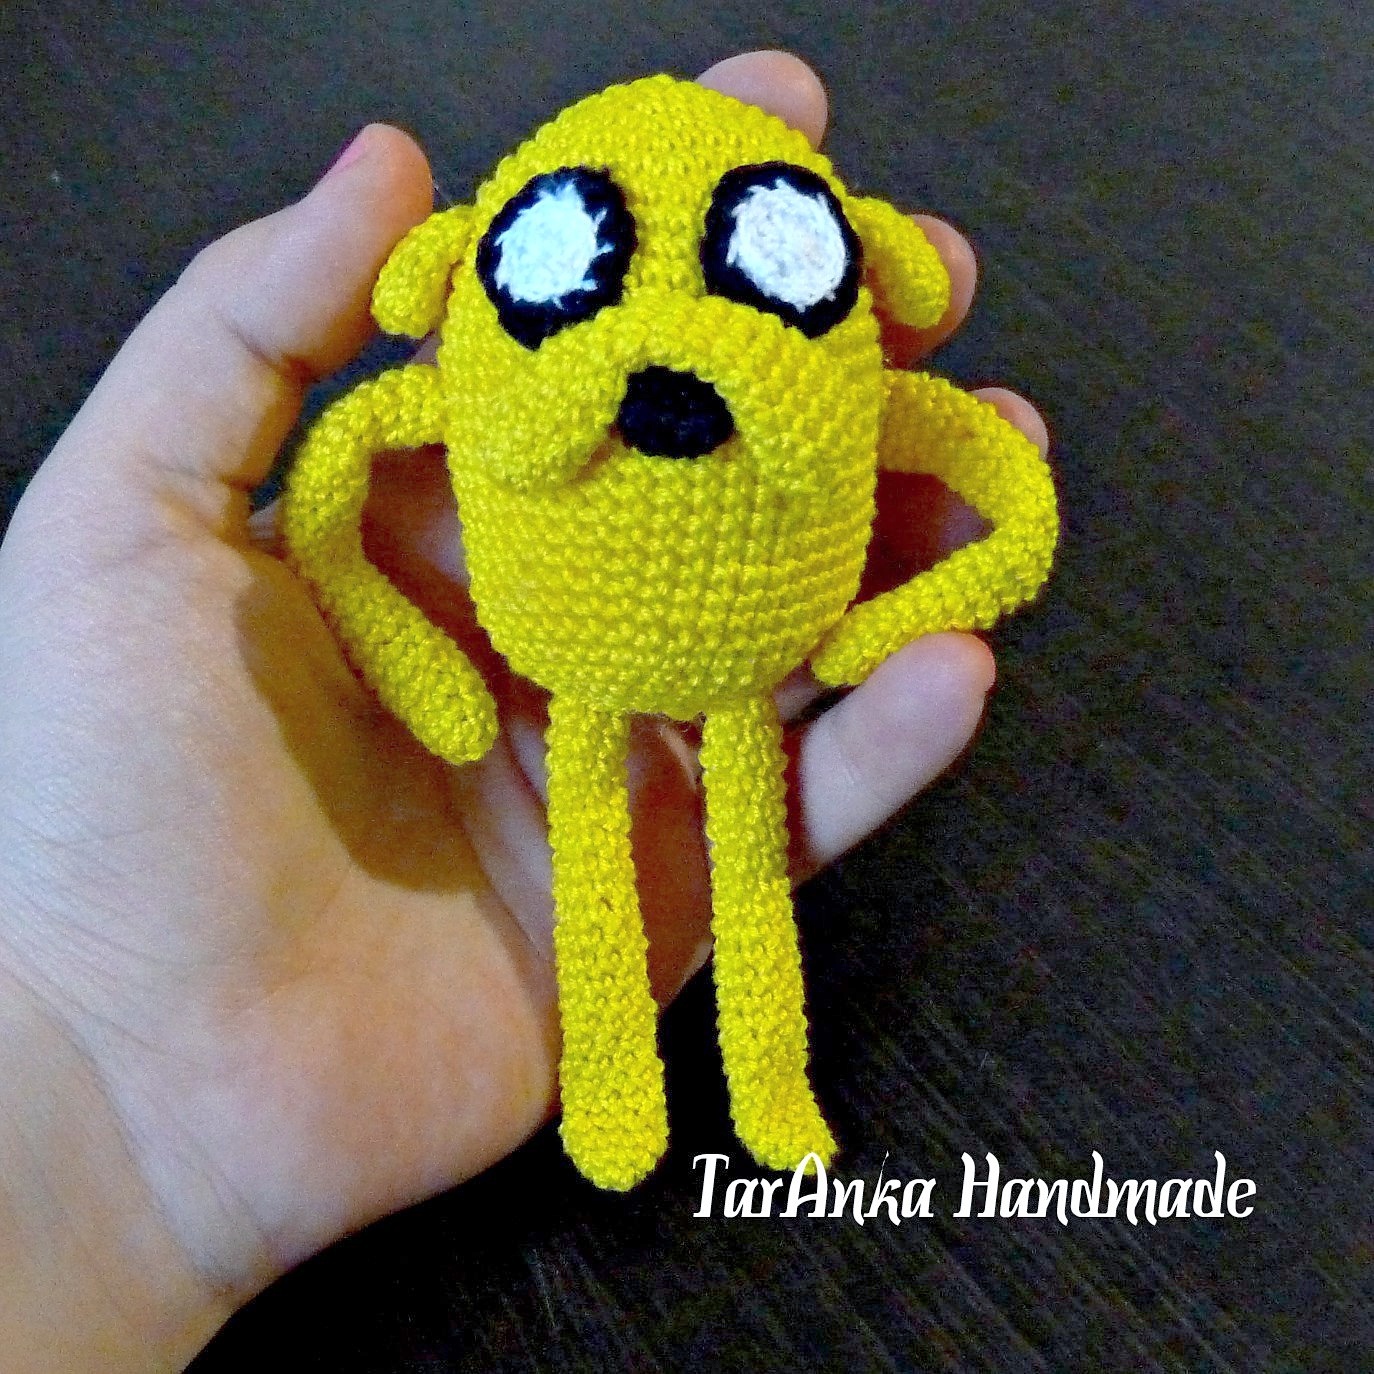 Jake and Puppyrka) - My, Knitting, Adventure Time, Amigurumi, Jake, Princess bubble wrap, Crochet, Knitted toys, Longpost